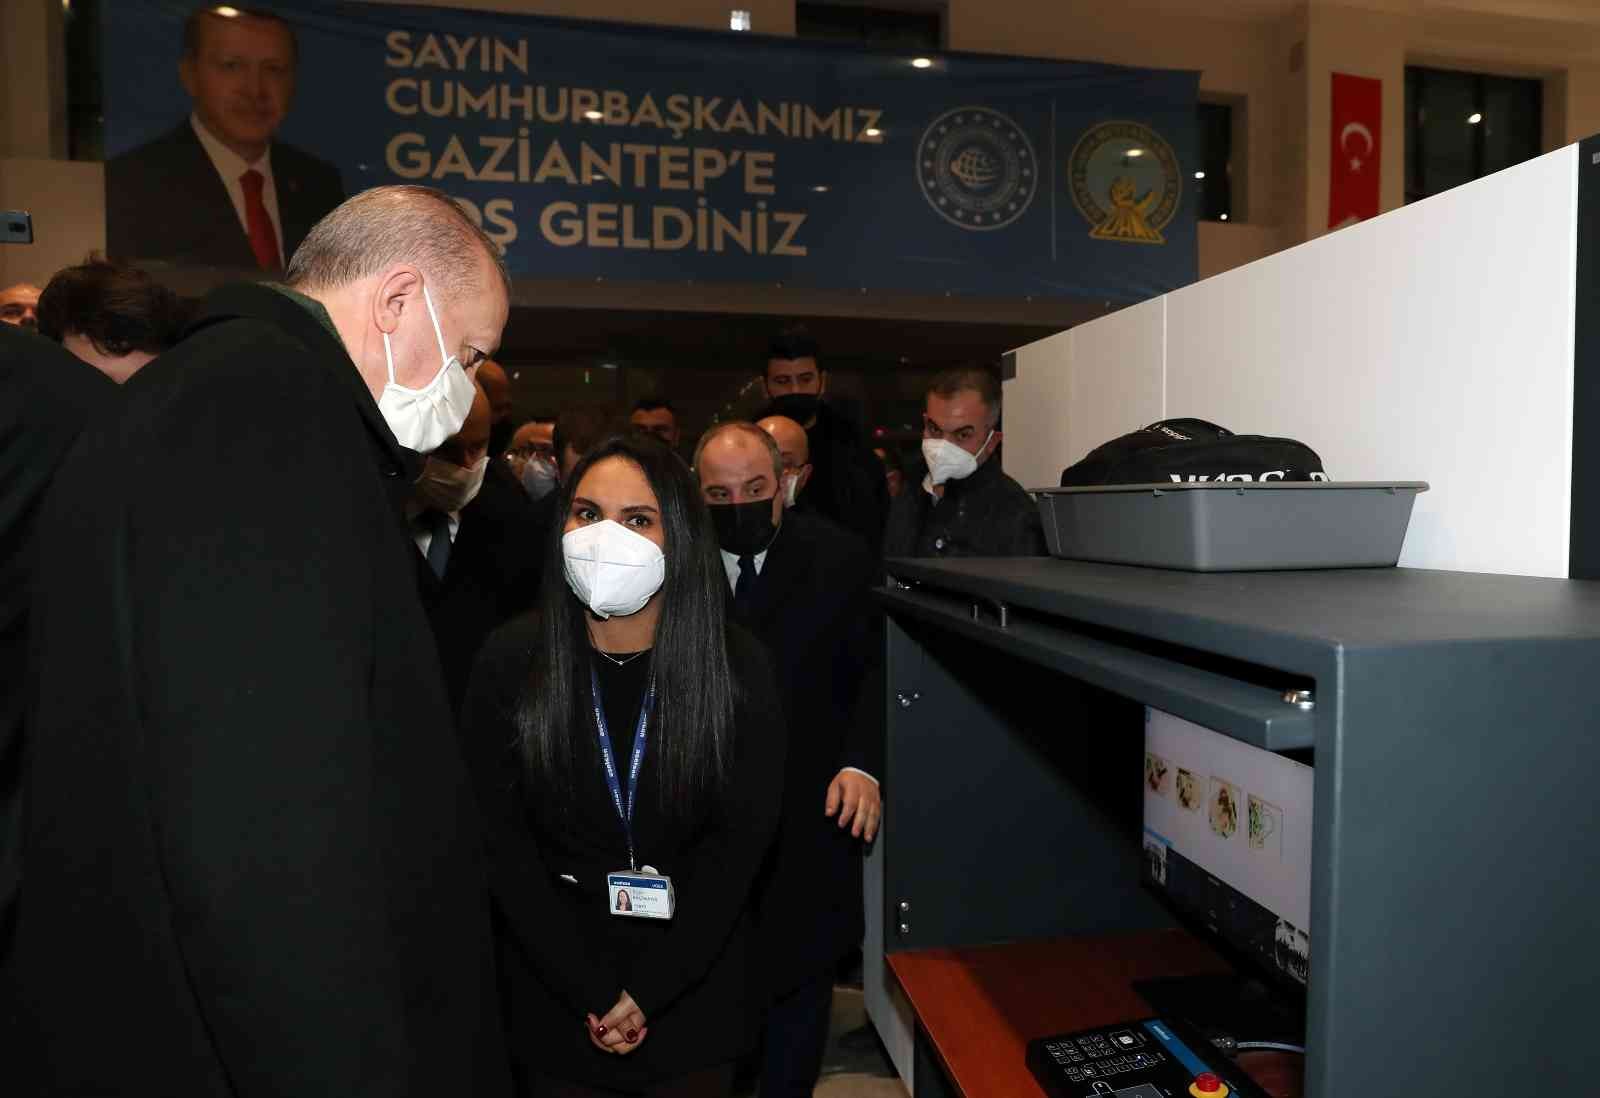 Cumhurbaşkanı yerli X-ray cihazını Gaziantep’te inceledi #gaziantep